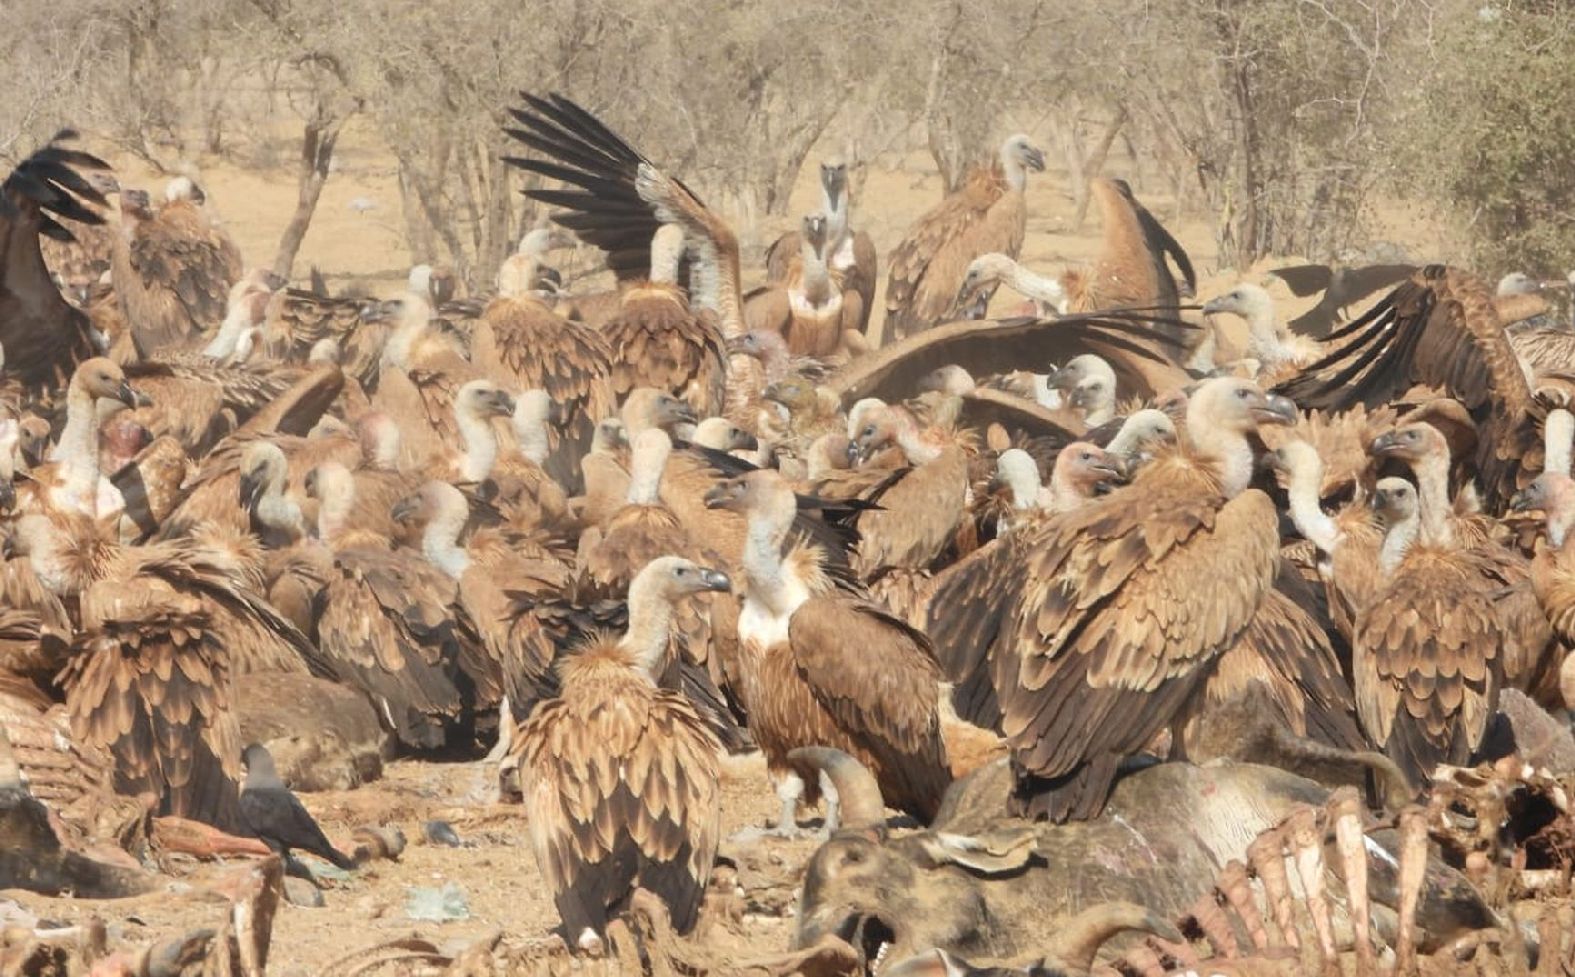 Collard bird reached Jaisalmer for first time from Pakistan